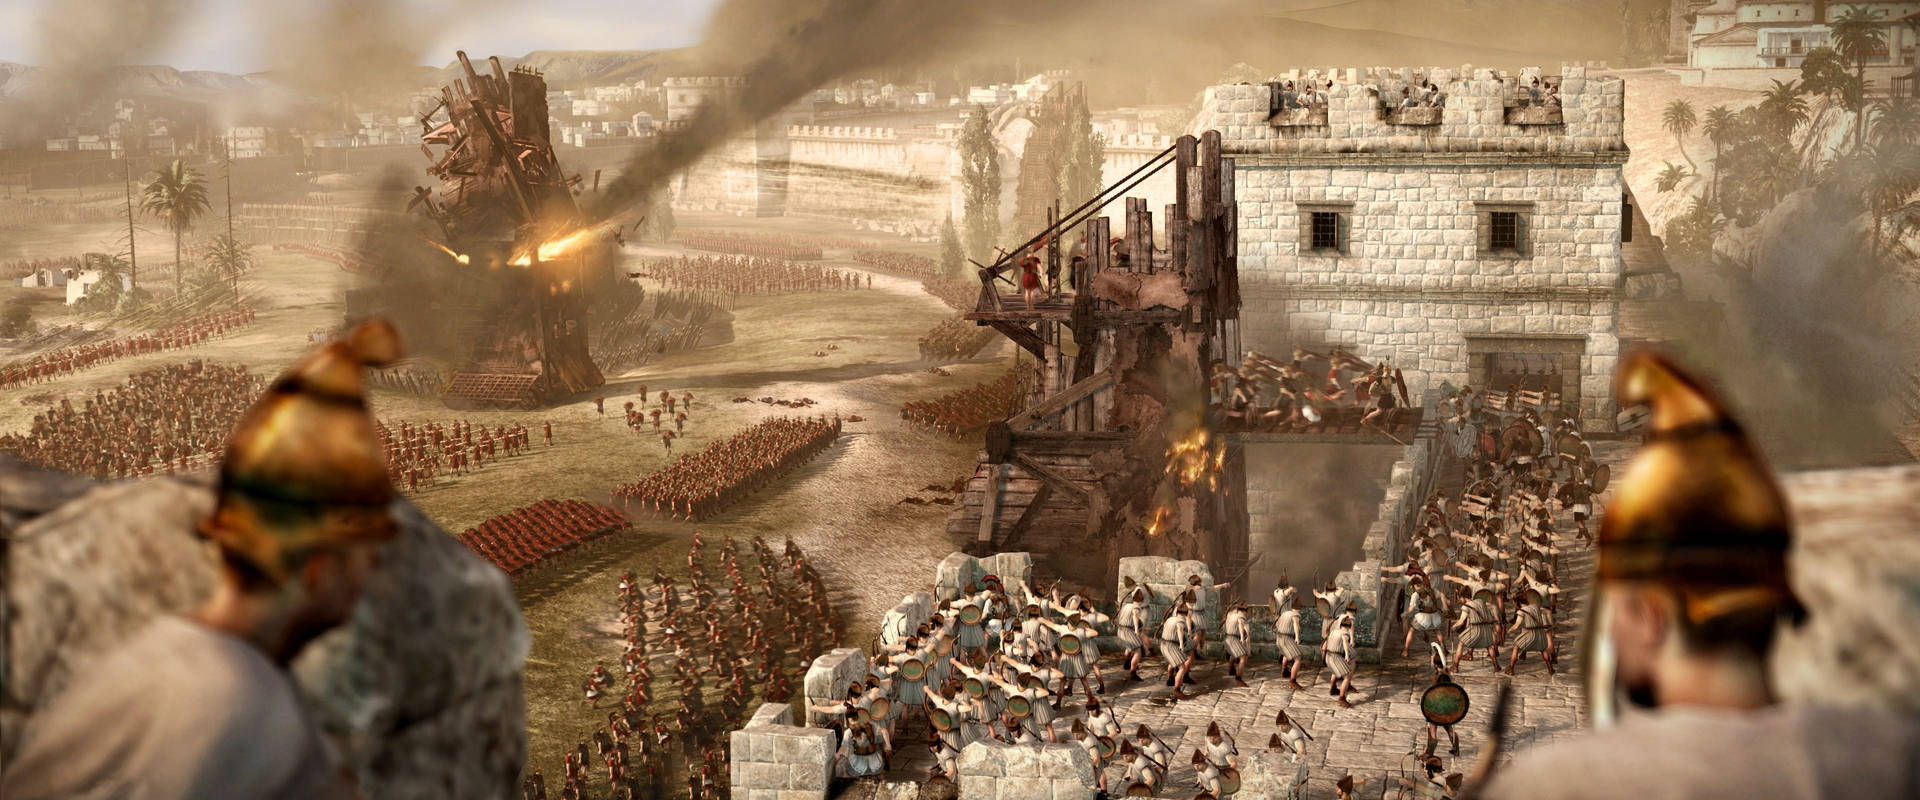 Carthagesoldaten Belagerung Wallpaper